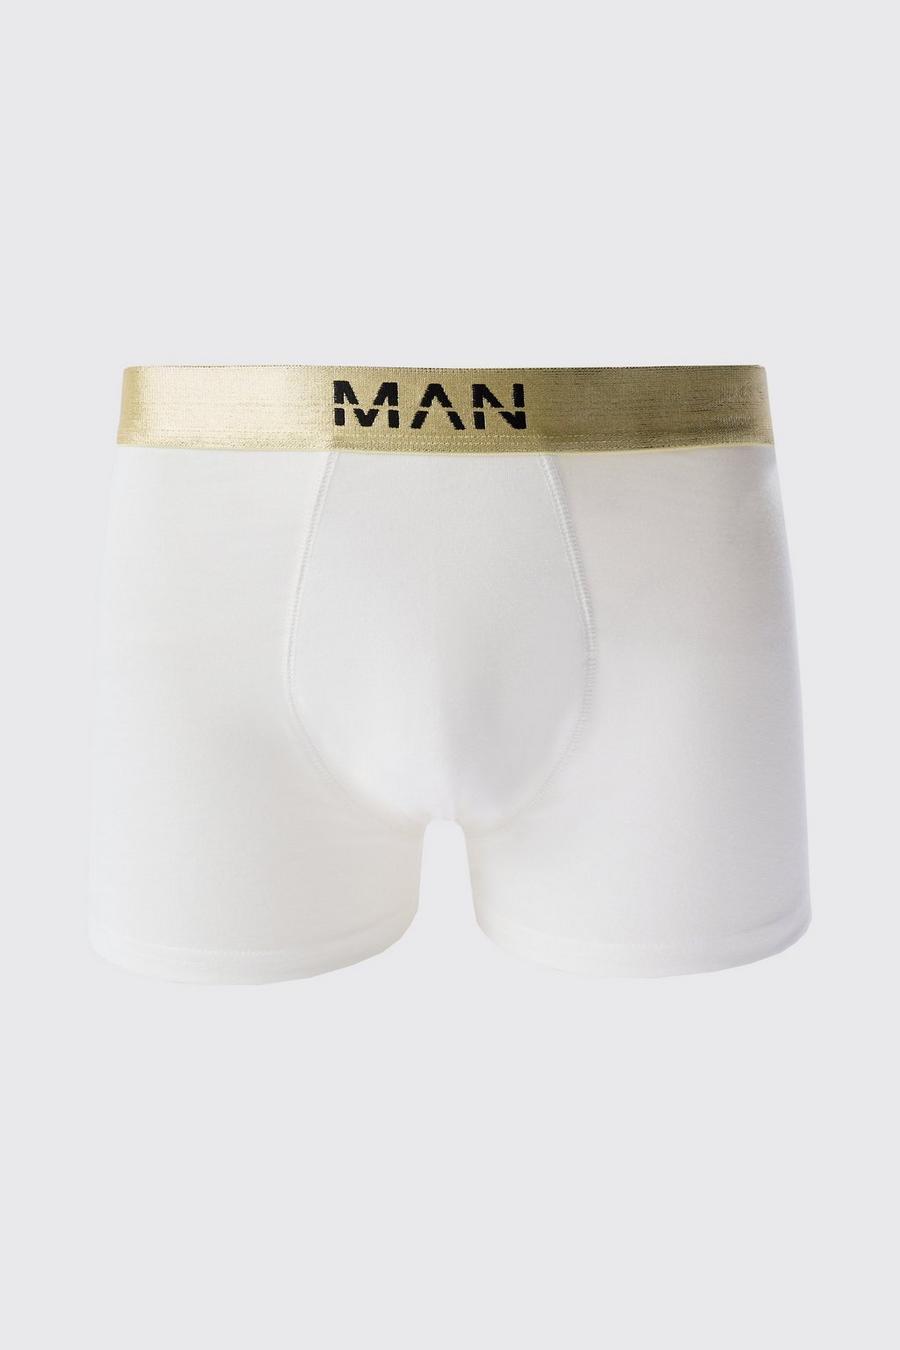 Boxer Man Dash color oro con fascia in vita - set di 3 paia, Multi image number 1